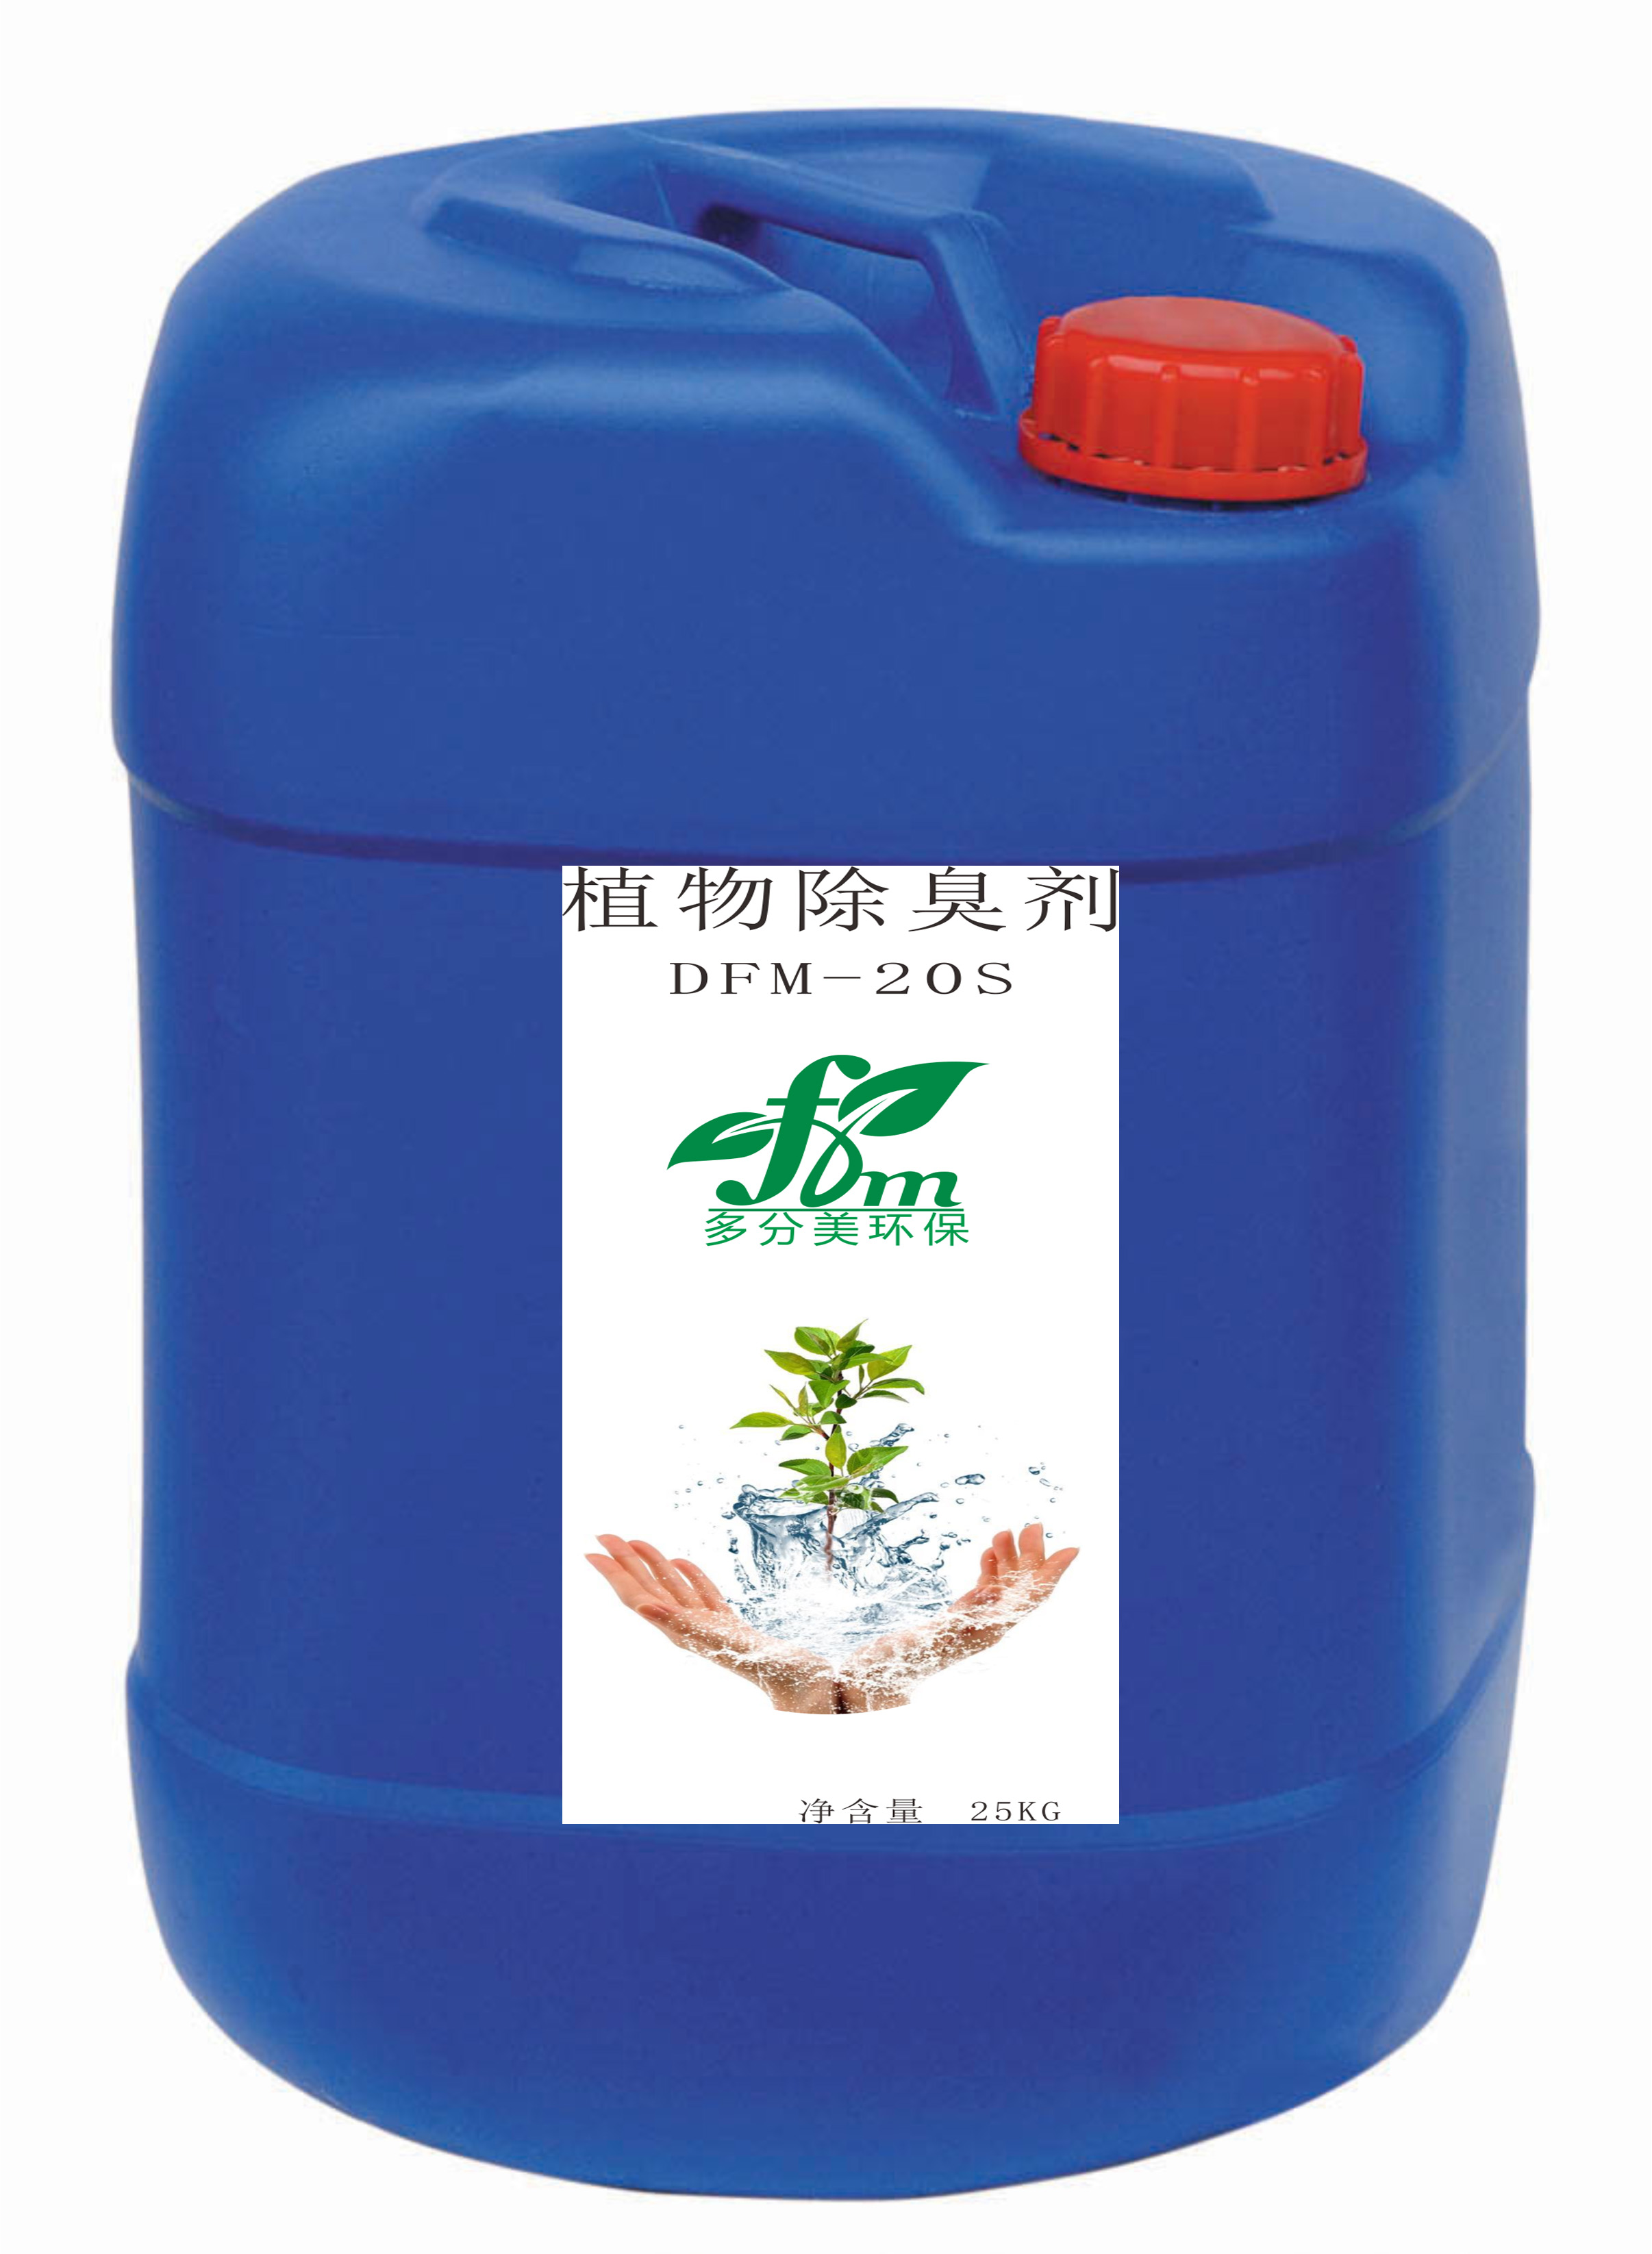 dfm-20s型供应多分美植物除臭剂